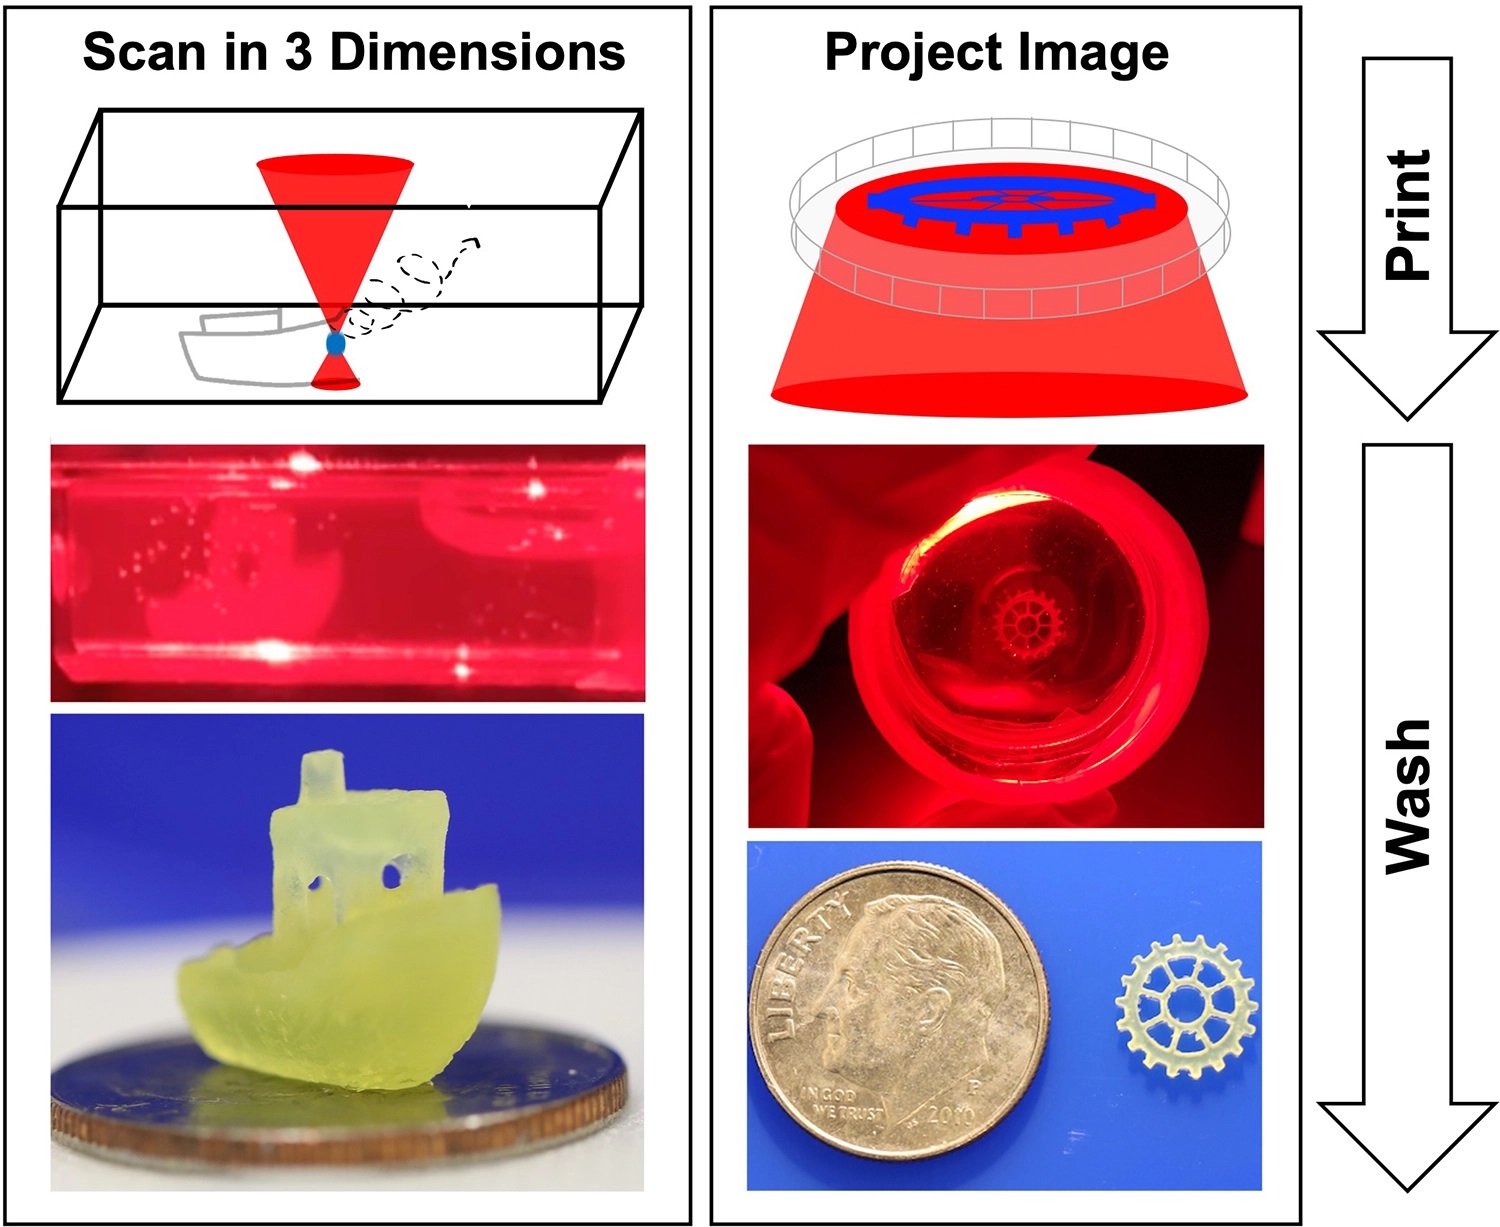 Інженери Стенфорда та Гарварда розробили новий вид 3D-друку об'єктів складної форми